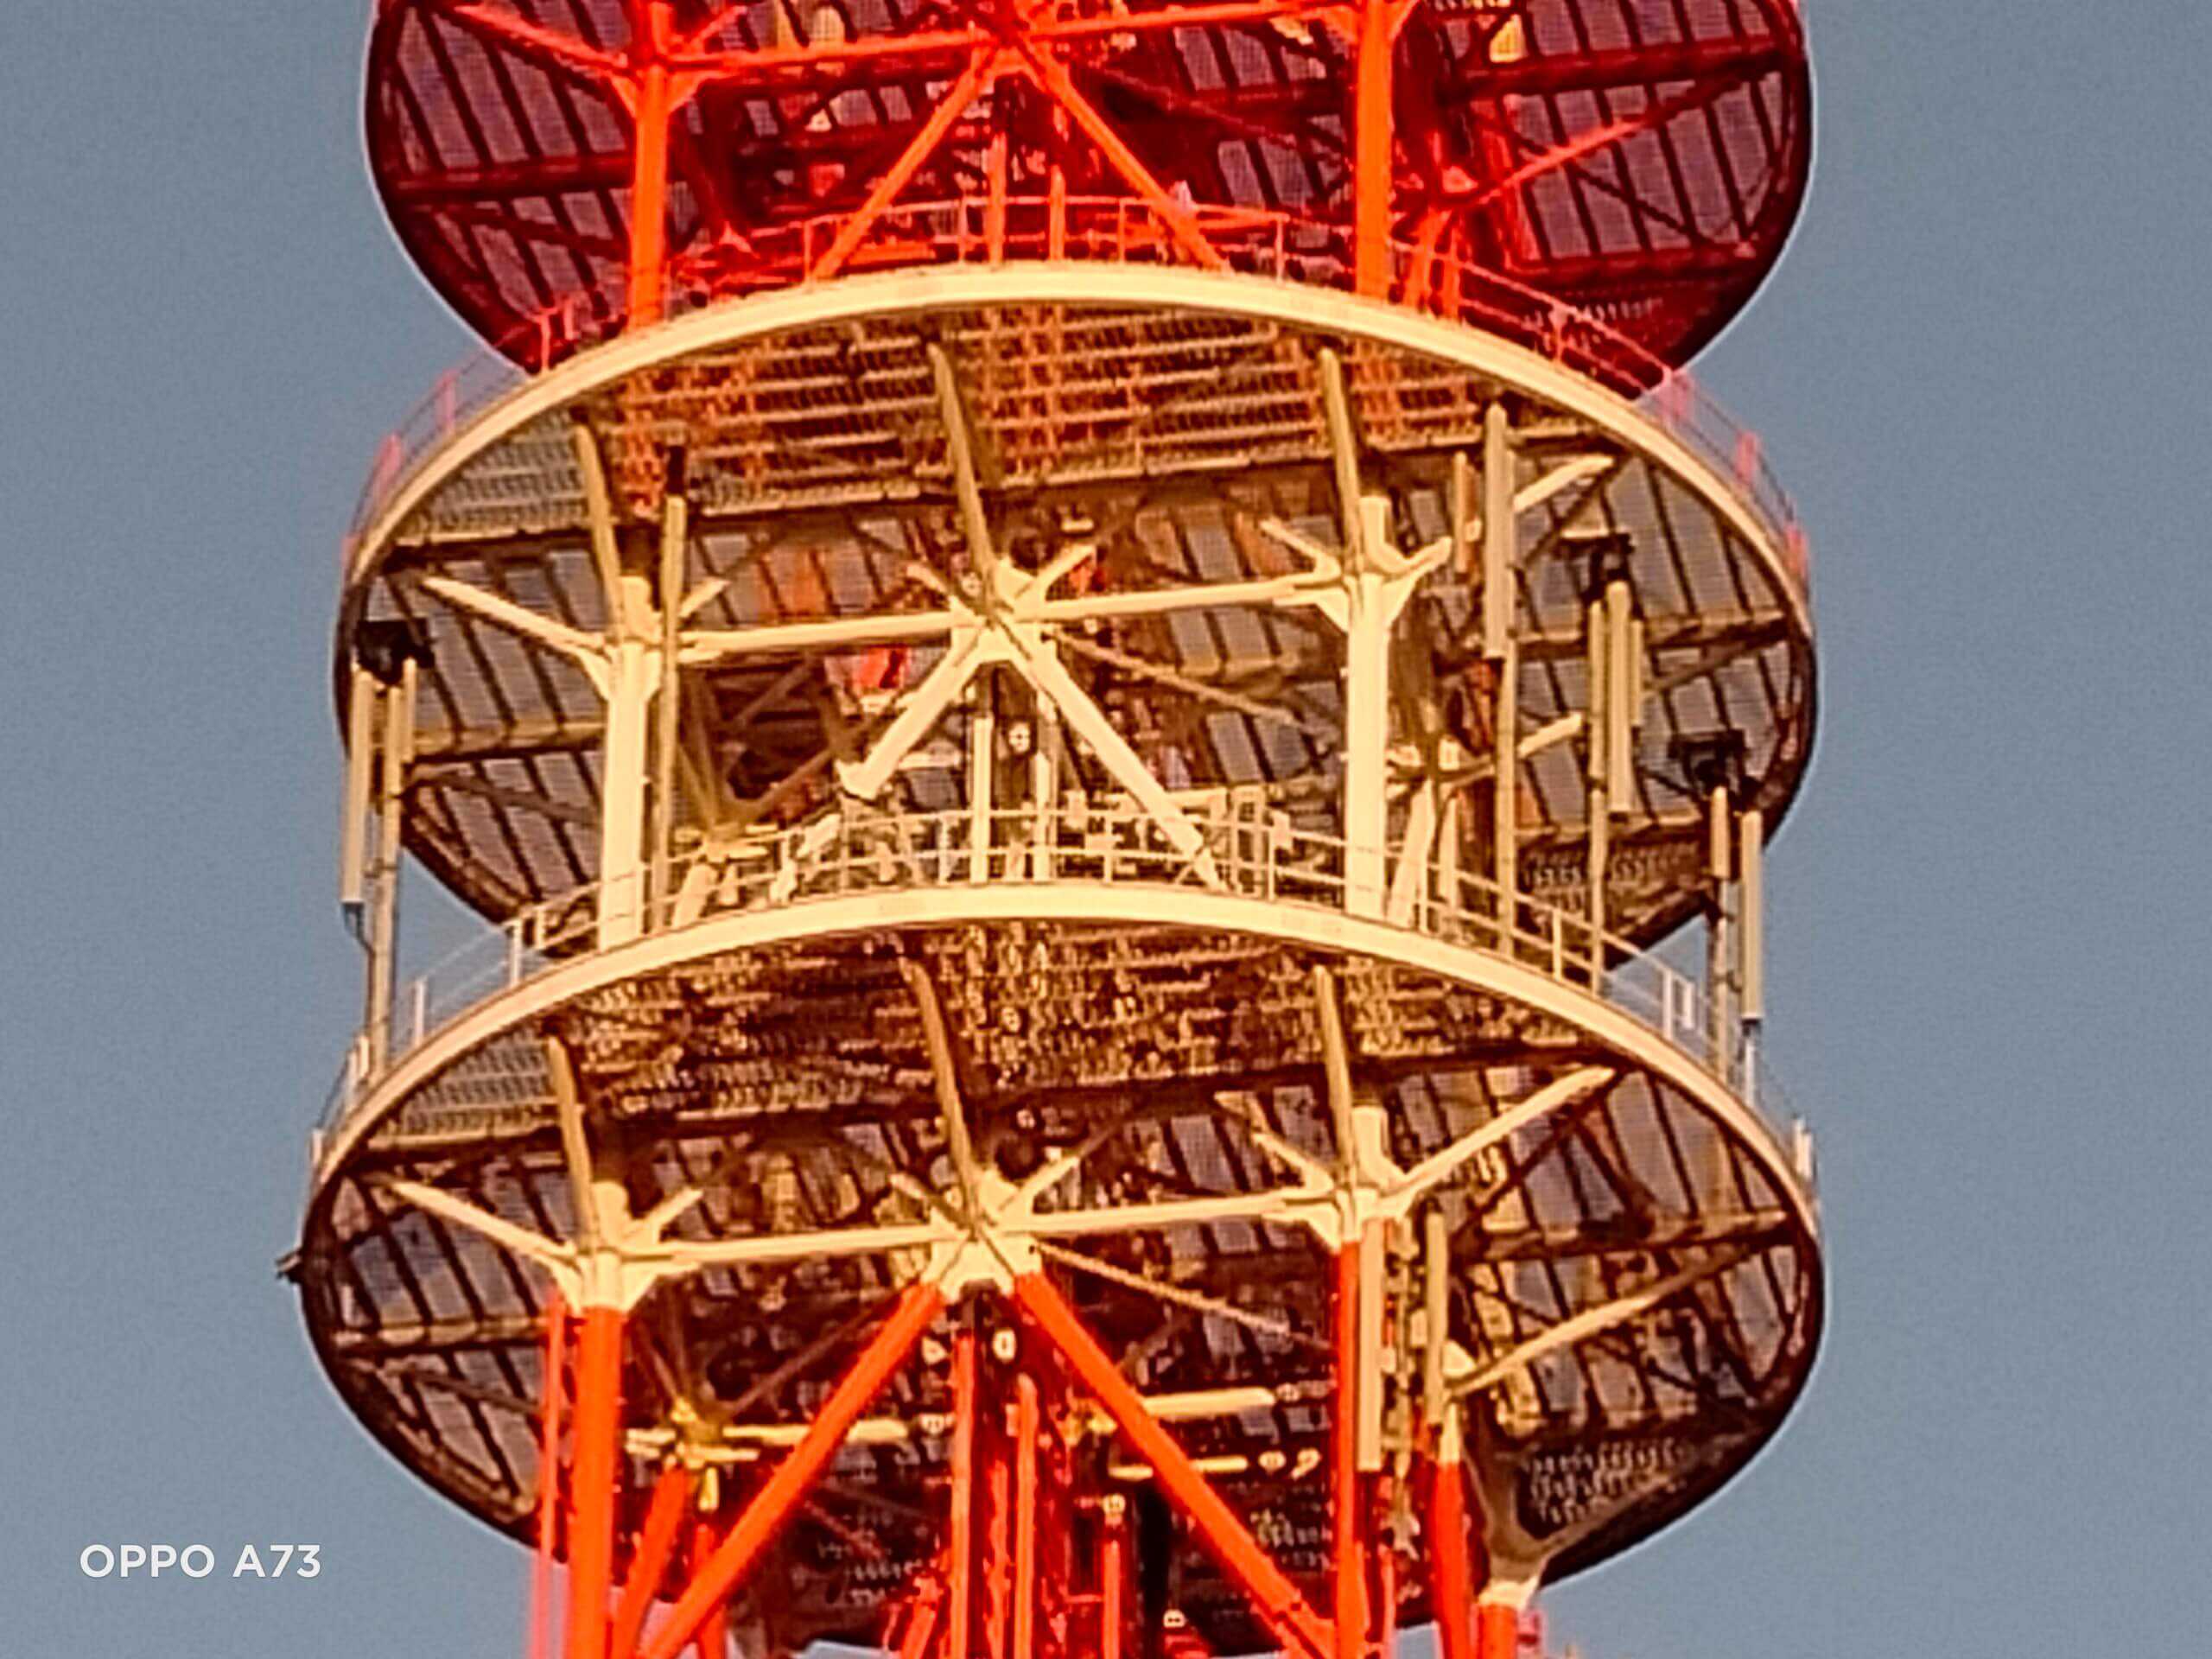 OPPO A73のデジタルズーム8倍で撮影した電波塔の画像